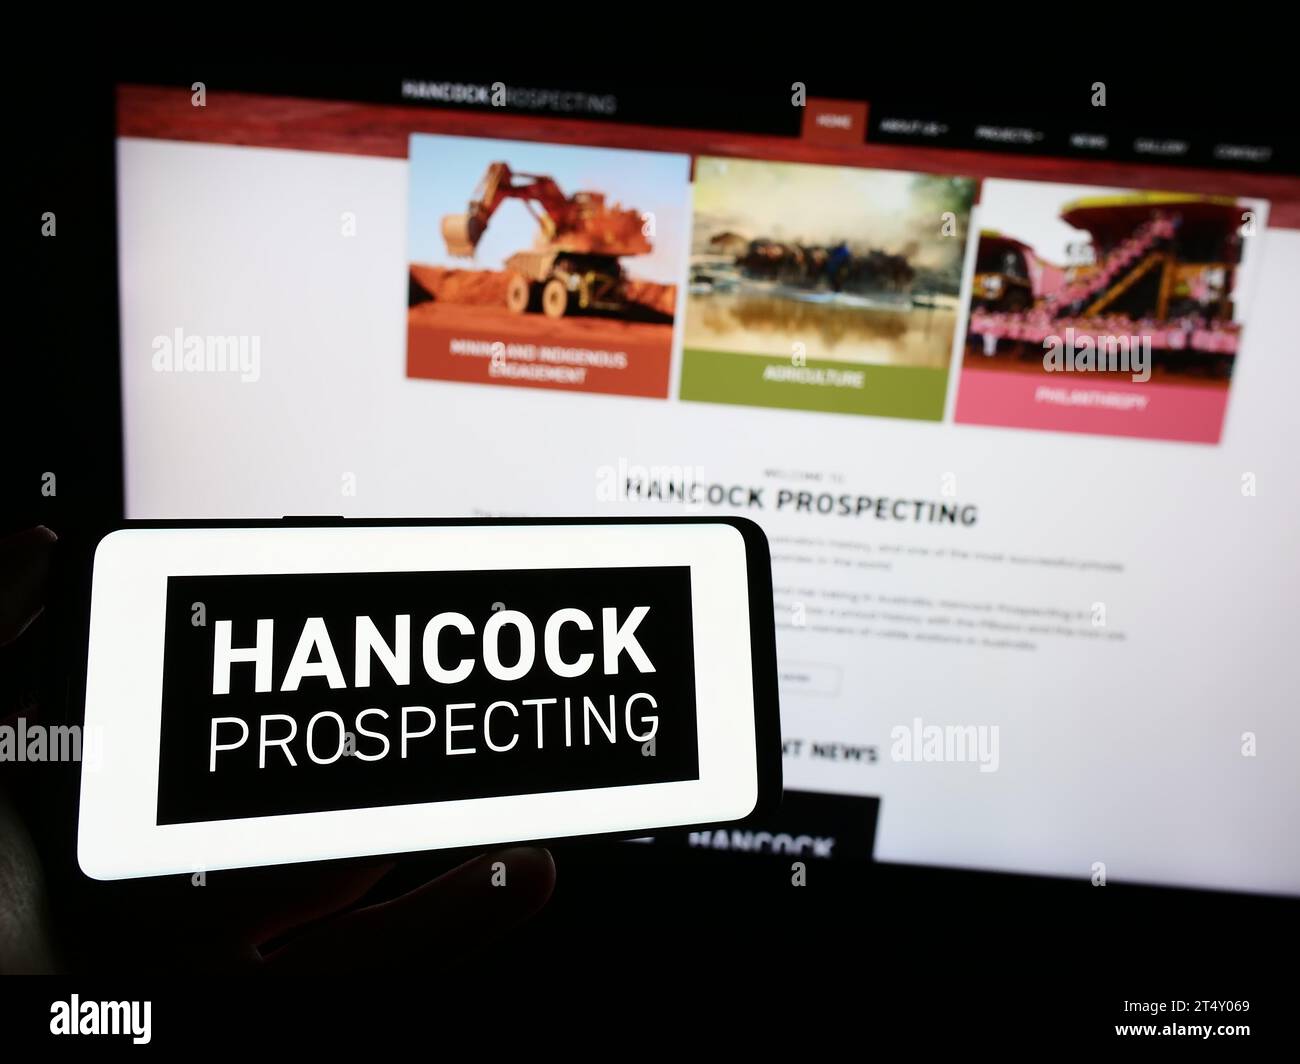 Persona che tiene il cellulare con il logo della società mineraria australiana Hancock Prospecting Pty. Ltd. Davanti alla pagina Web. Concentrarsi sul display del telefono. Foto Stock